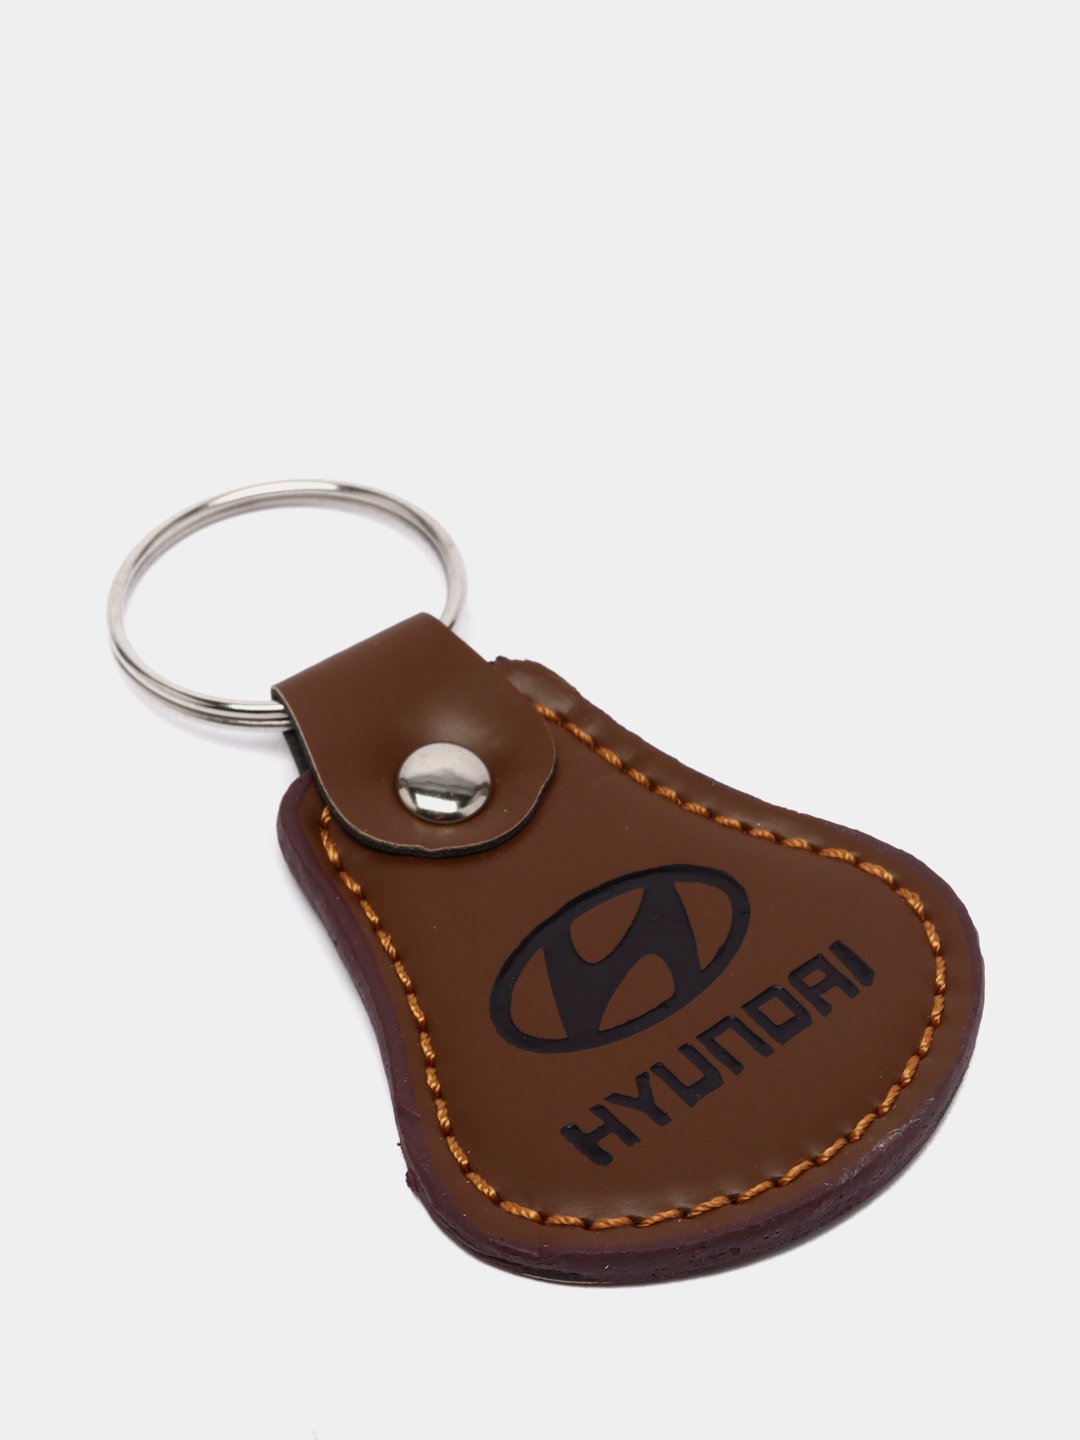 Брелок для ключей автомобиля Вашей марки с доставкой по Украине